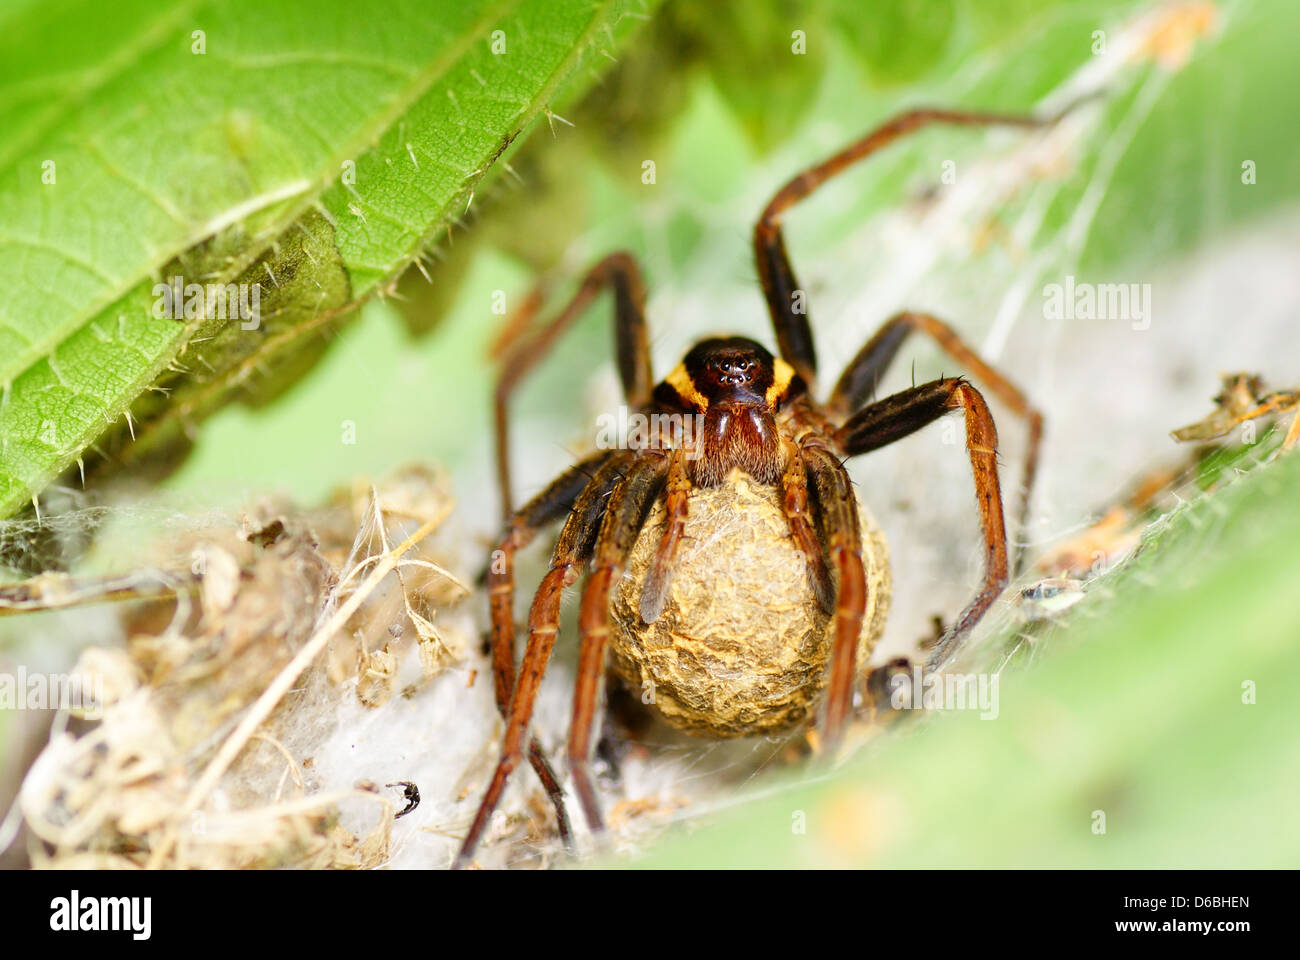 Grosse araignée araignée effrayante sur Banque D'Images